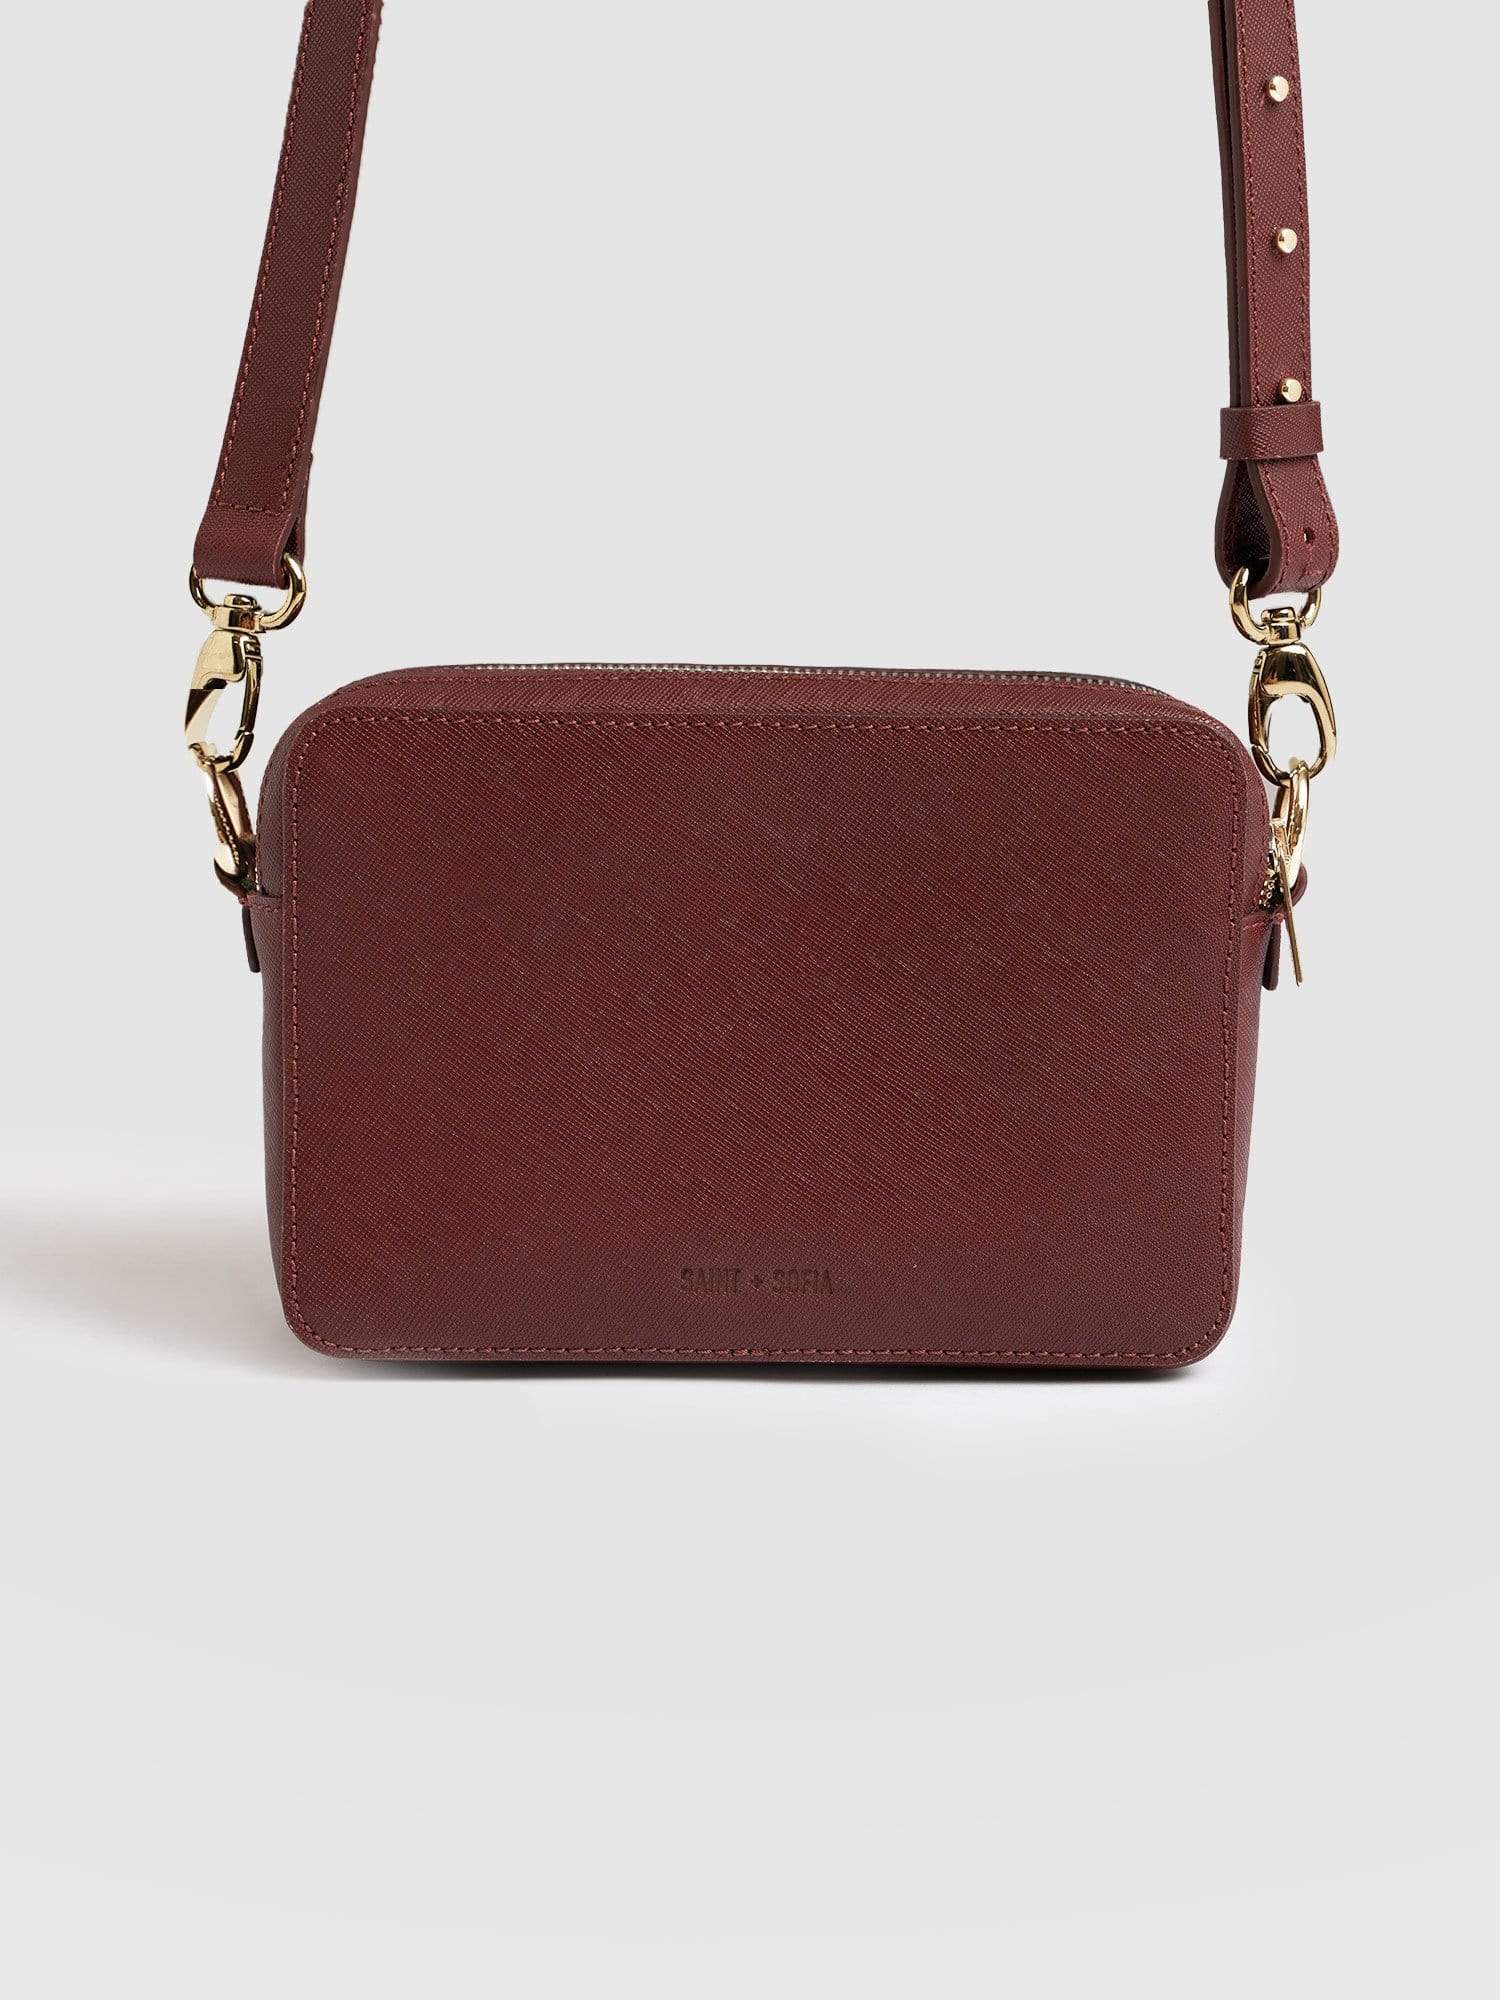 MINI SORBONNE Burgundy patent leather bag | Carel Paris Shoes